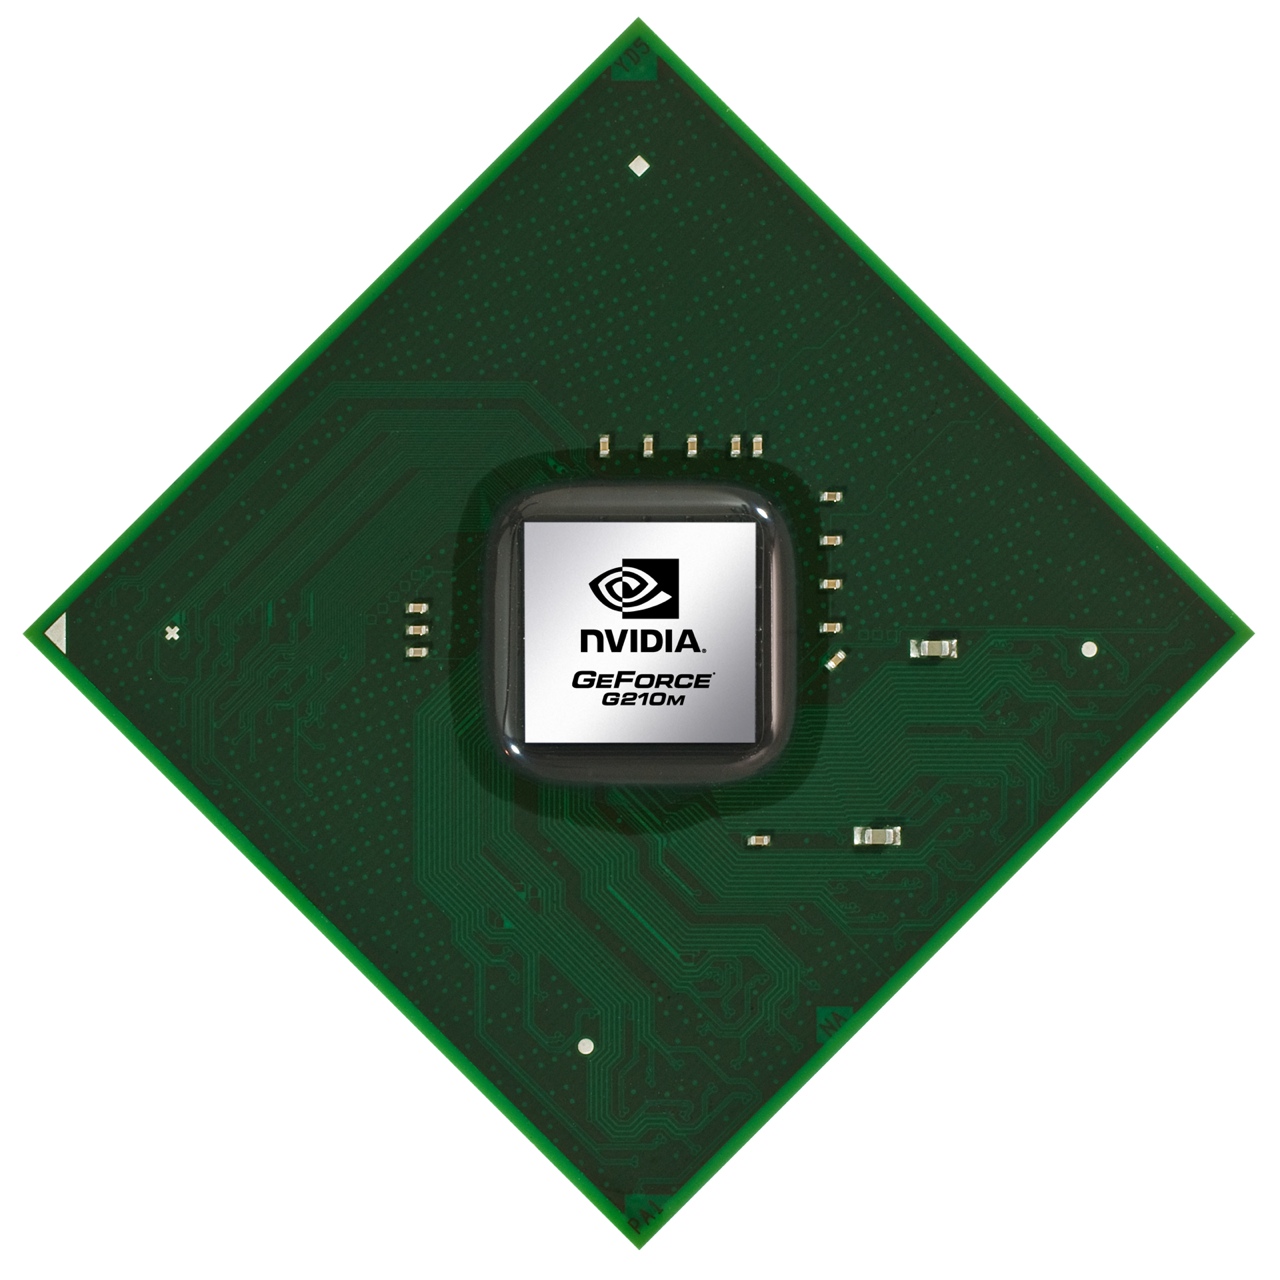 Nvidia Geforce G 210m Notebookcheck Net Tech